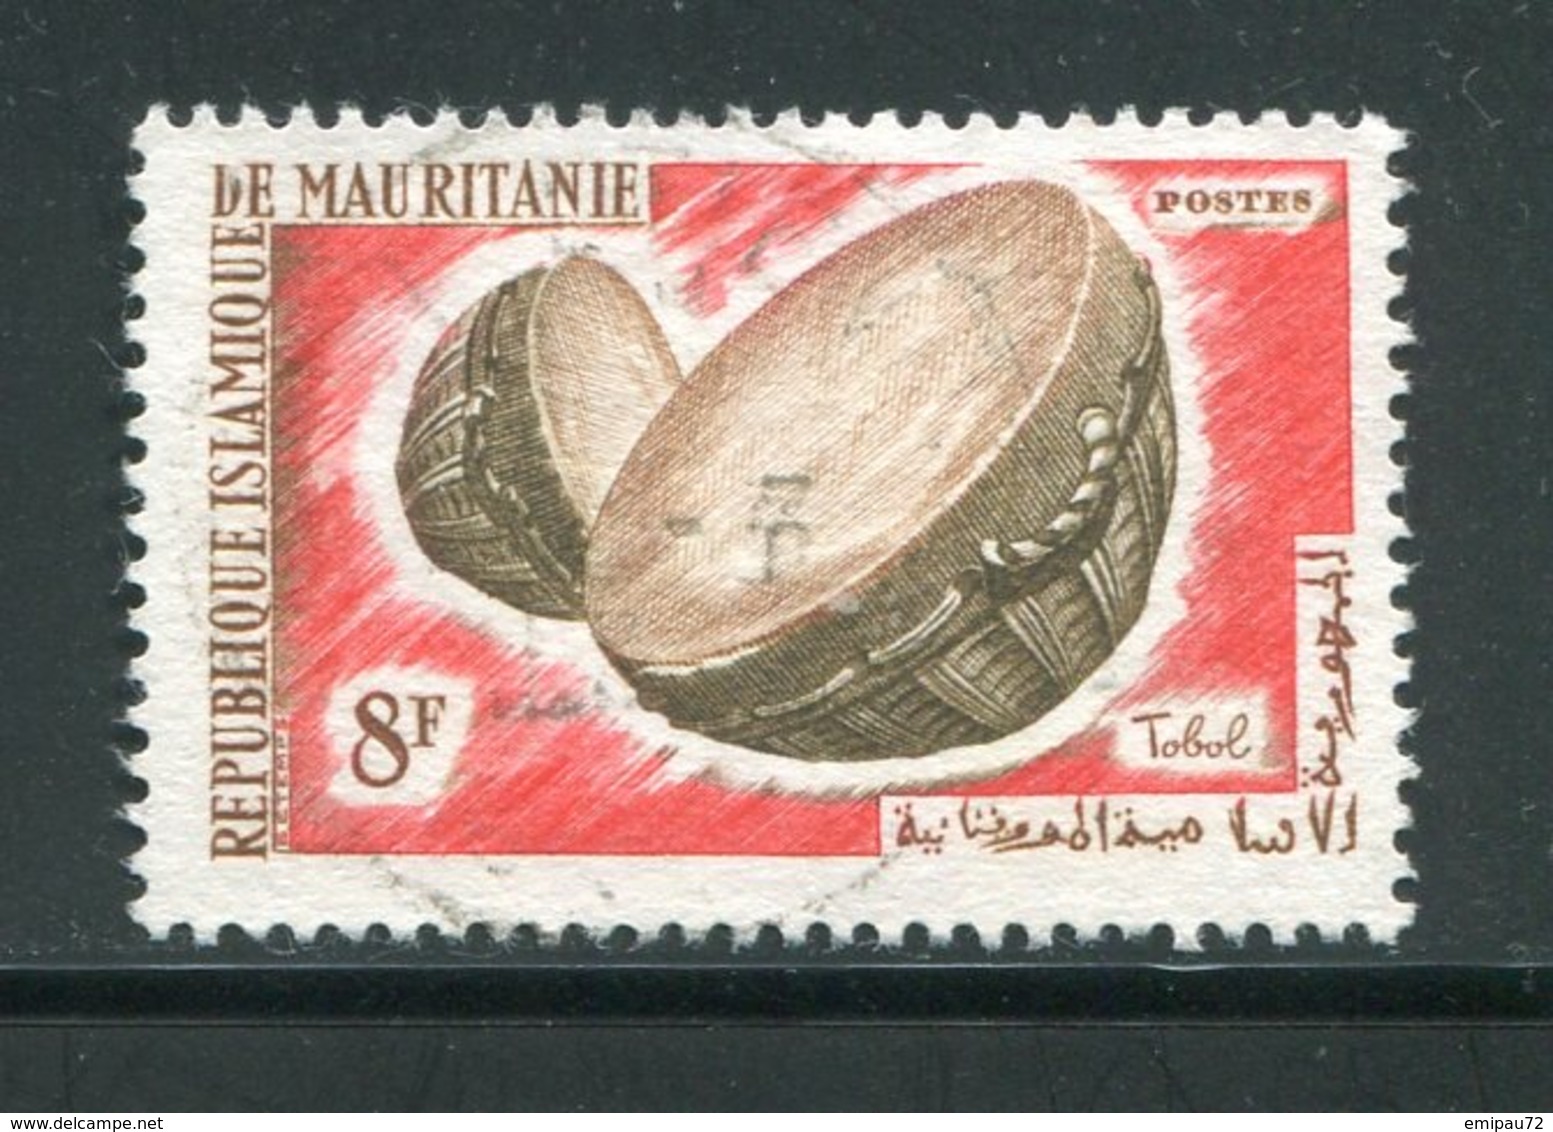 MAURITANIE- Y&T N°189- Oblitéré (instruments De Musique) - Mauritanie (1960-...)